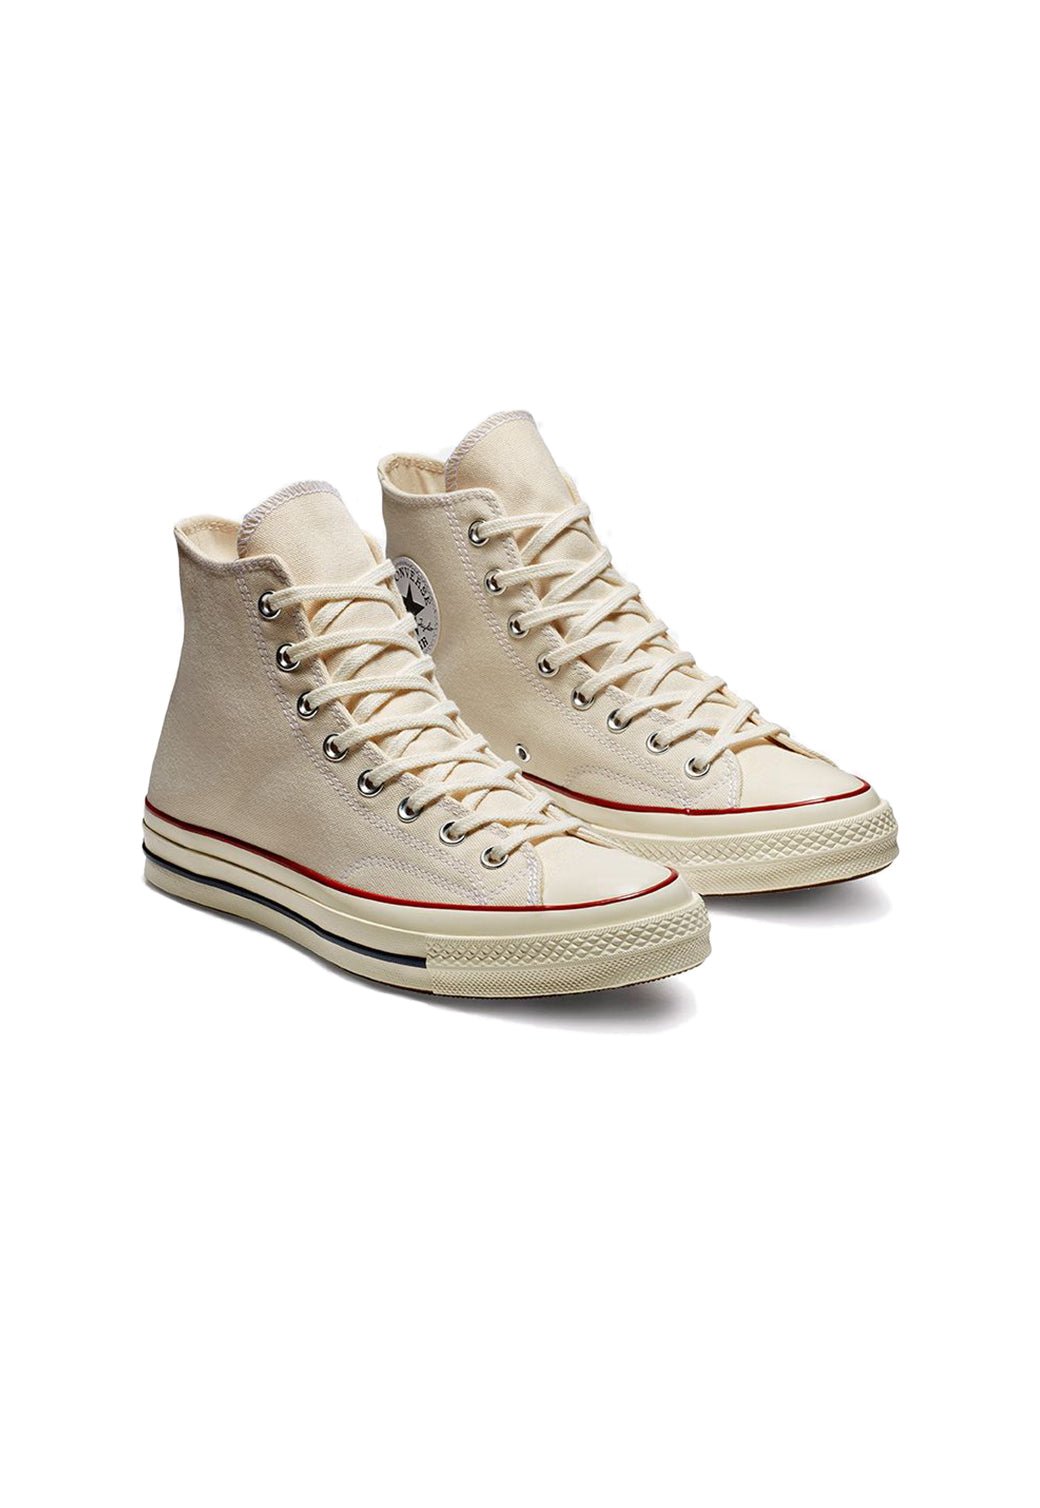 נעלי אולסטאר Chuck 70 גבוהות בצבע שמנת לנשים - Converse